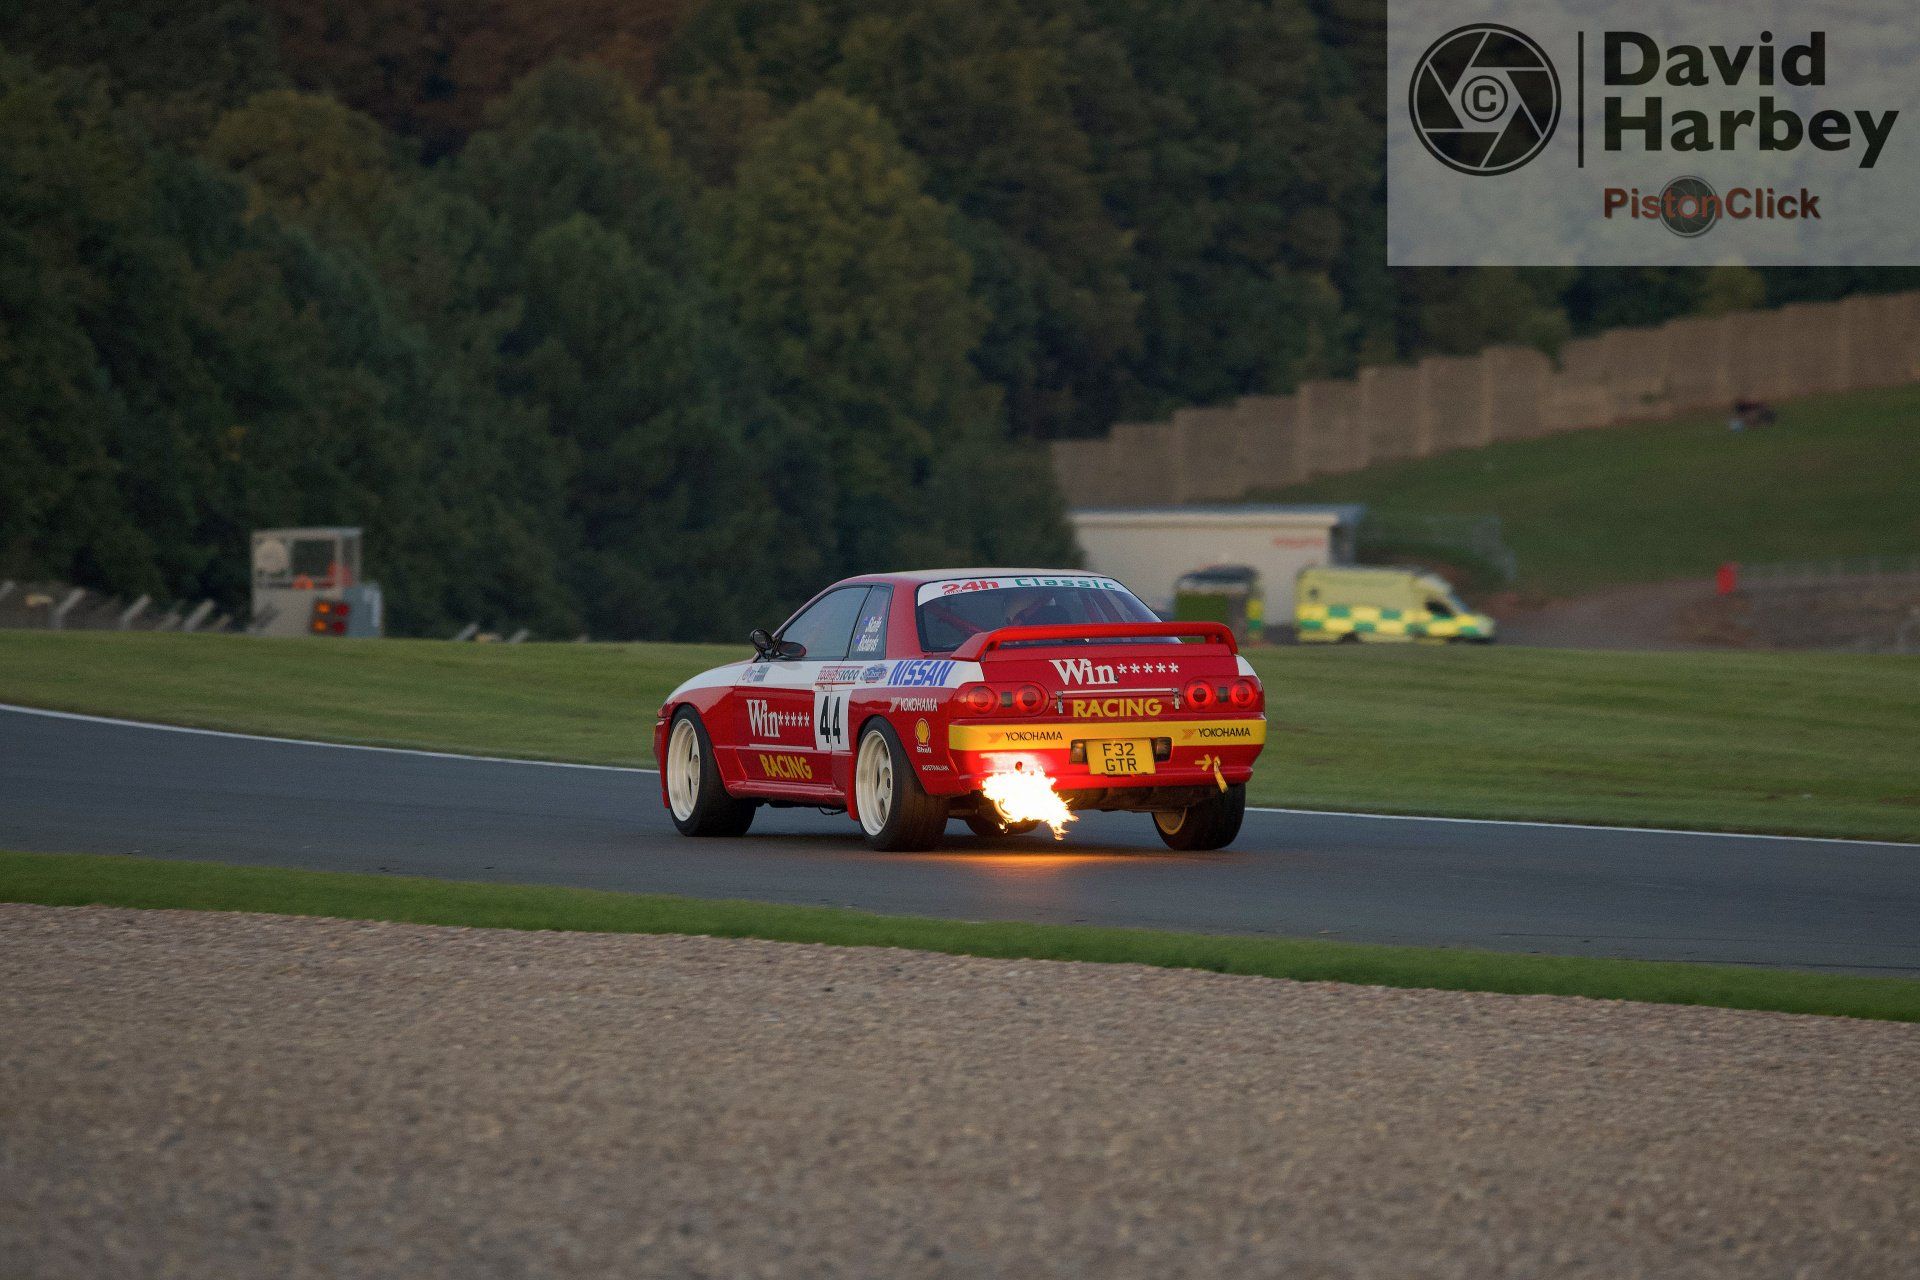 R32 GT-R flames